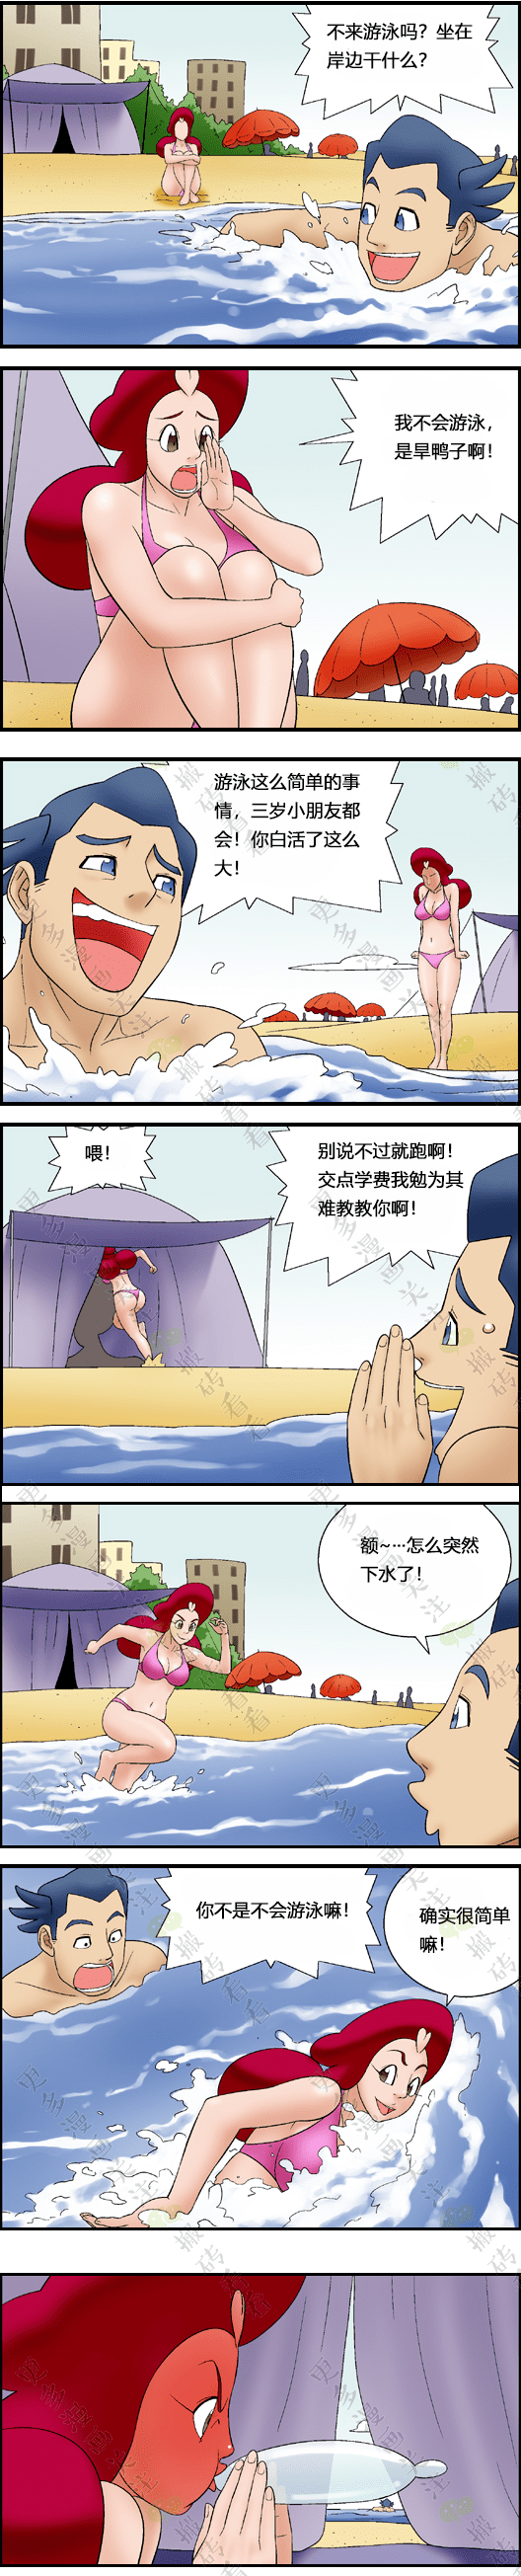 【短篇漫画】旱鸭女孩的游泳秘诀_解说